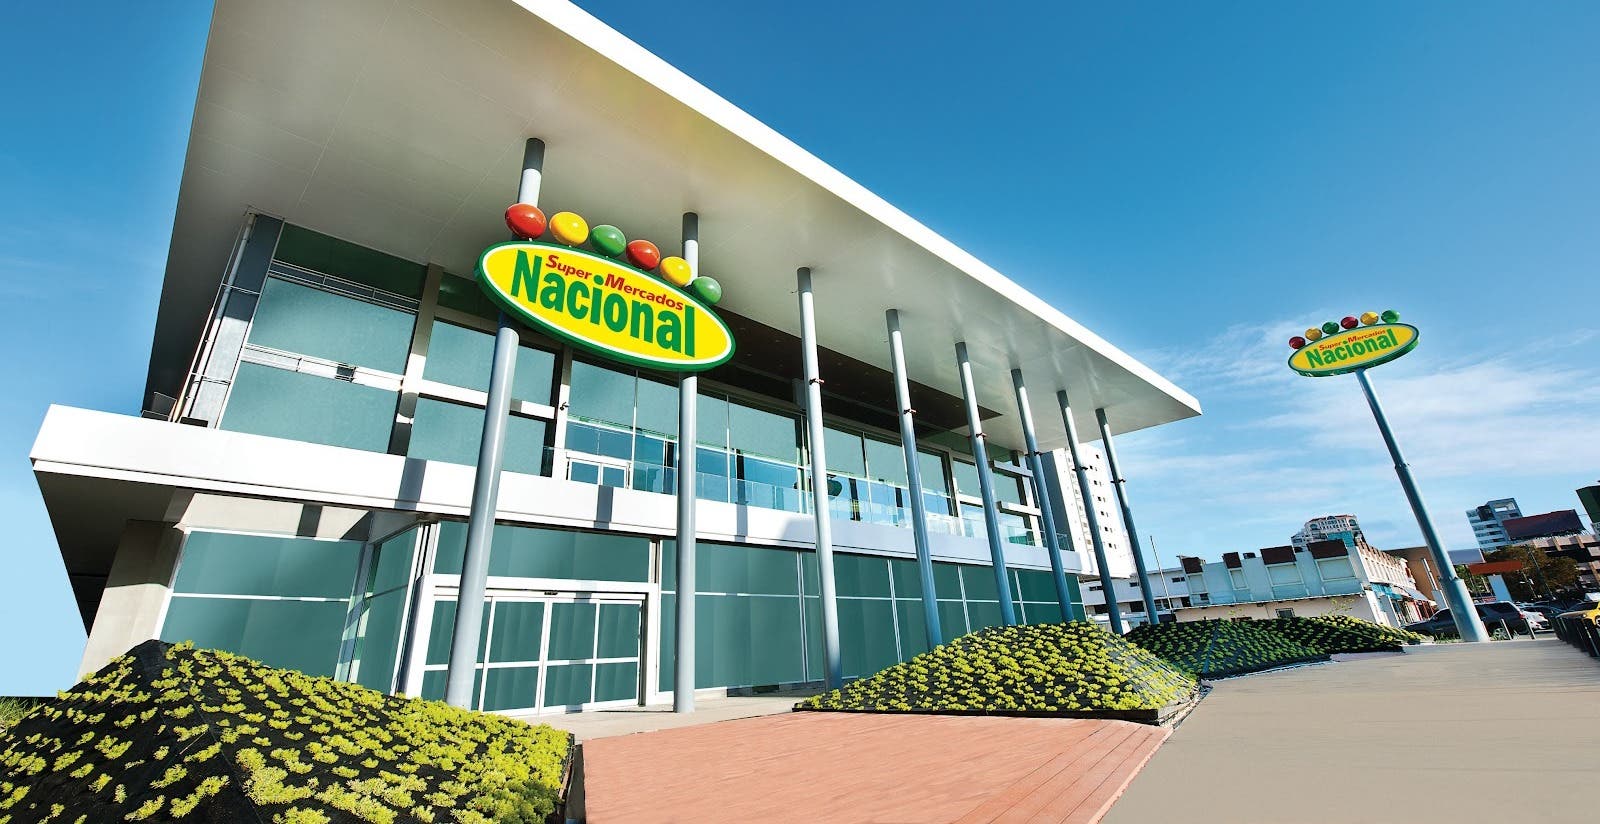 Supermercados Nacional establece alianza con páginas editoriales de recetas más visitadas